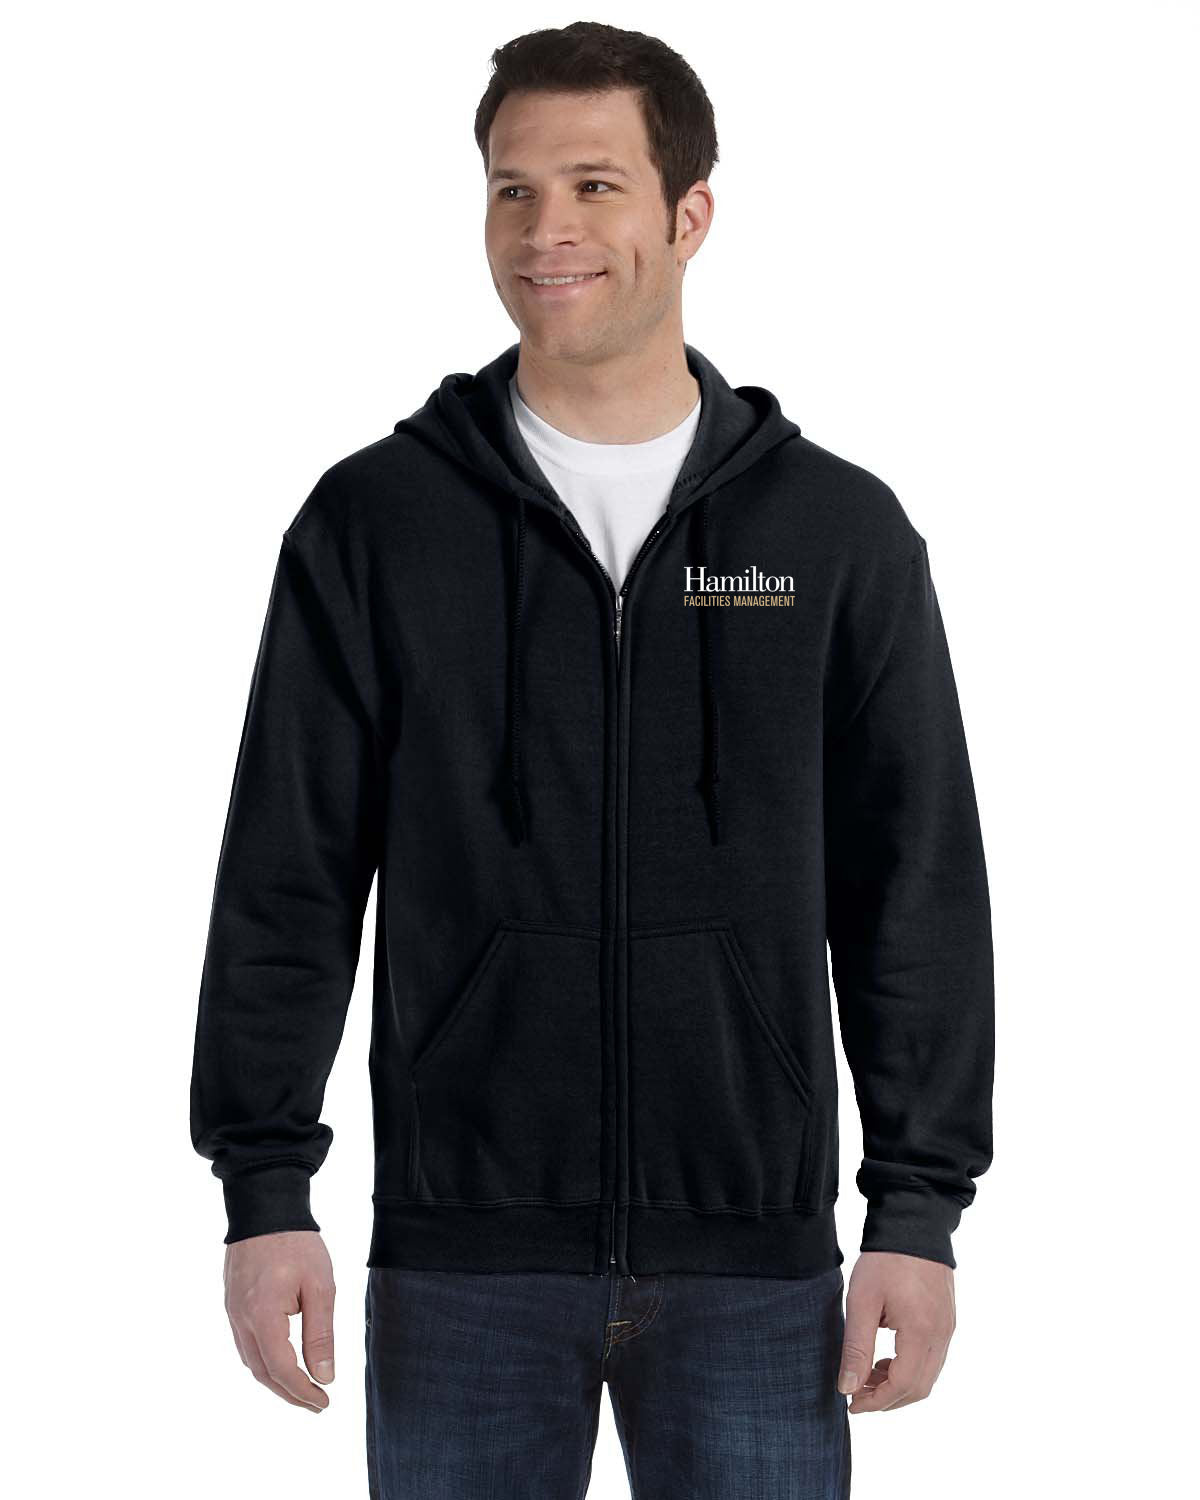 Adult Full-Zip Hooded Sweatshirt - Black